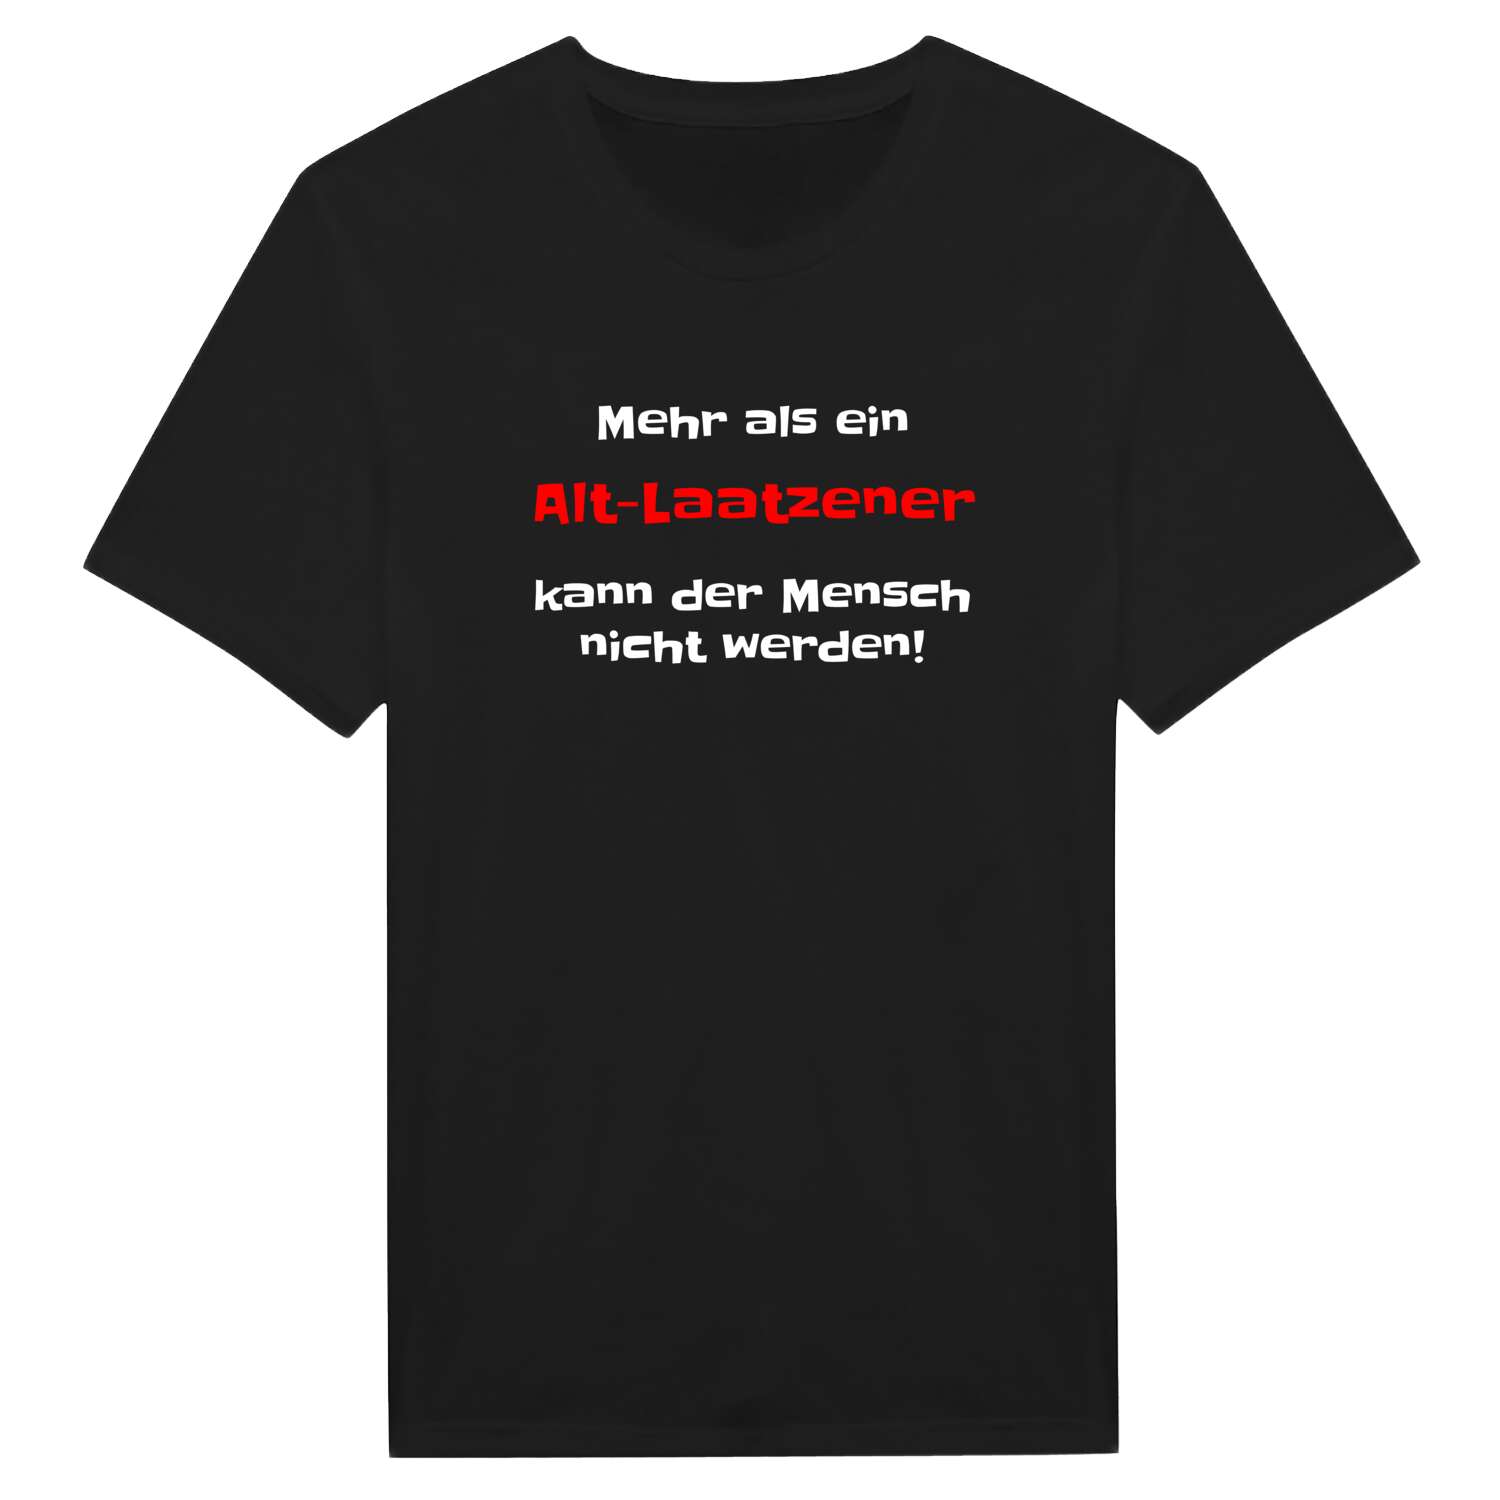 Alt-Laatzen T-Shirt »Mehr als ein«